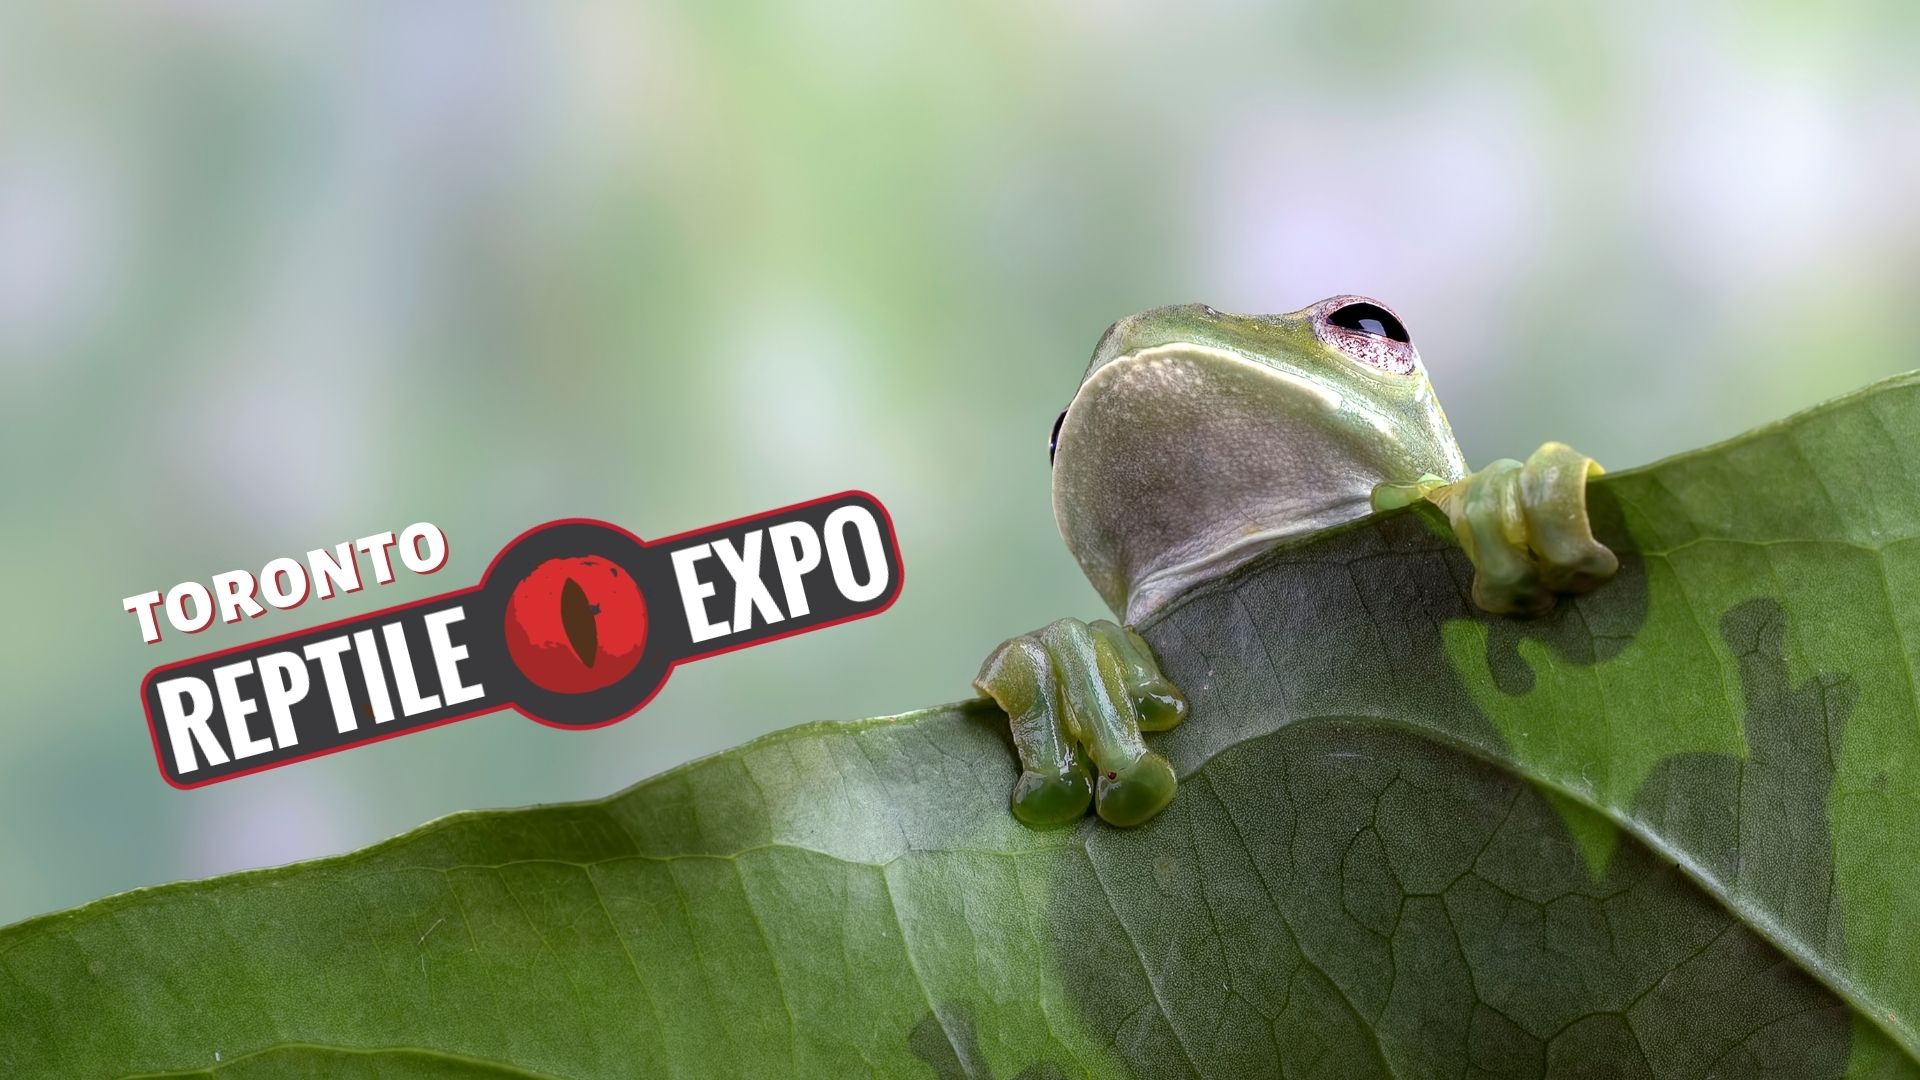 Toronto Reptile Expo